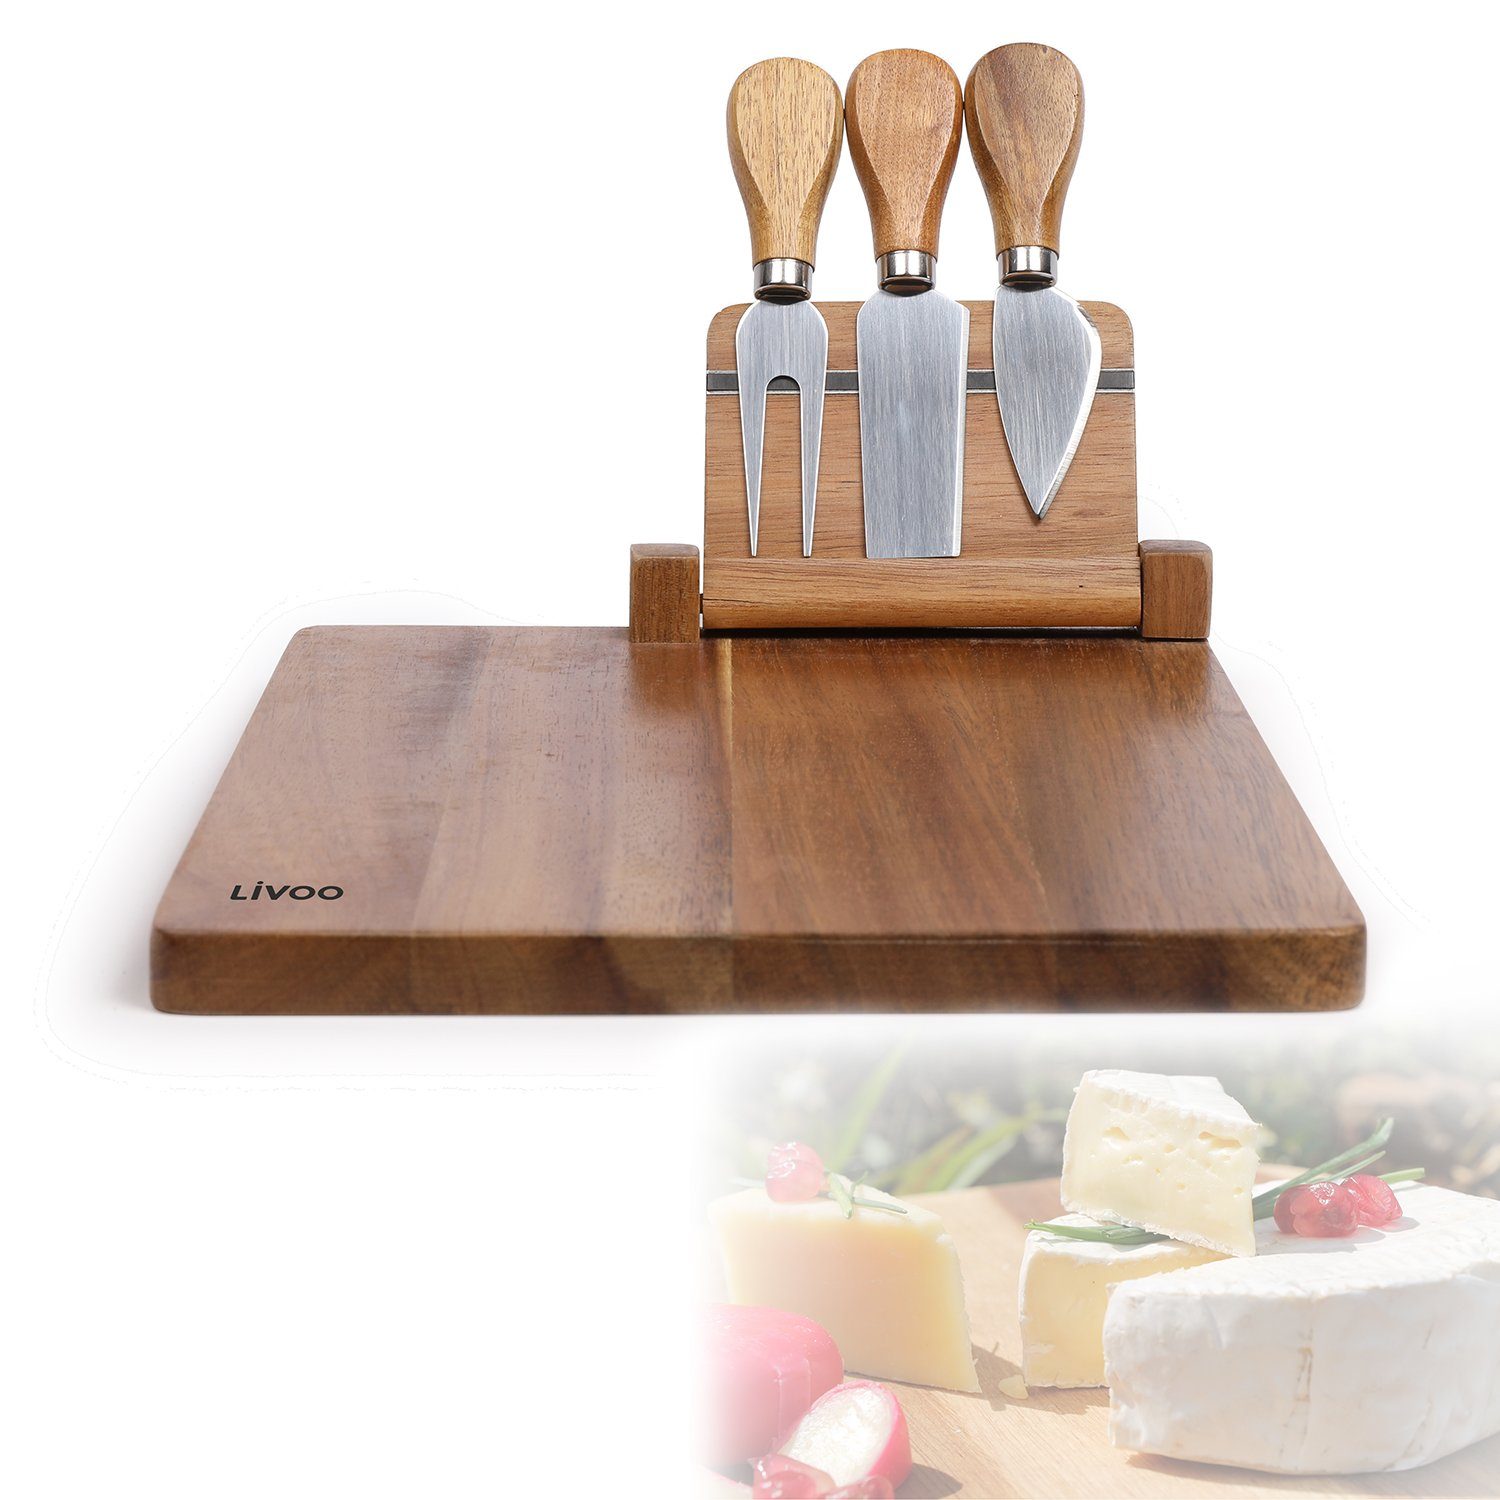 LIVOO Käsebrett »LIVOO Käsebrett mit 3 Käsemessern Servierplatte Käseplatte  Holz Magnet MES137« online kaufen | OTTO